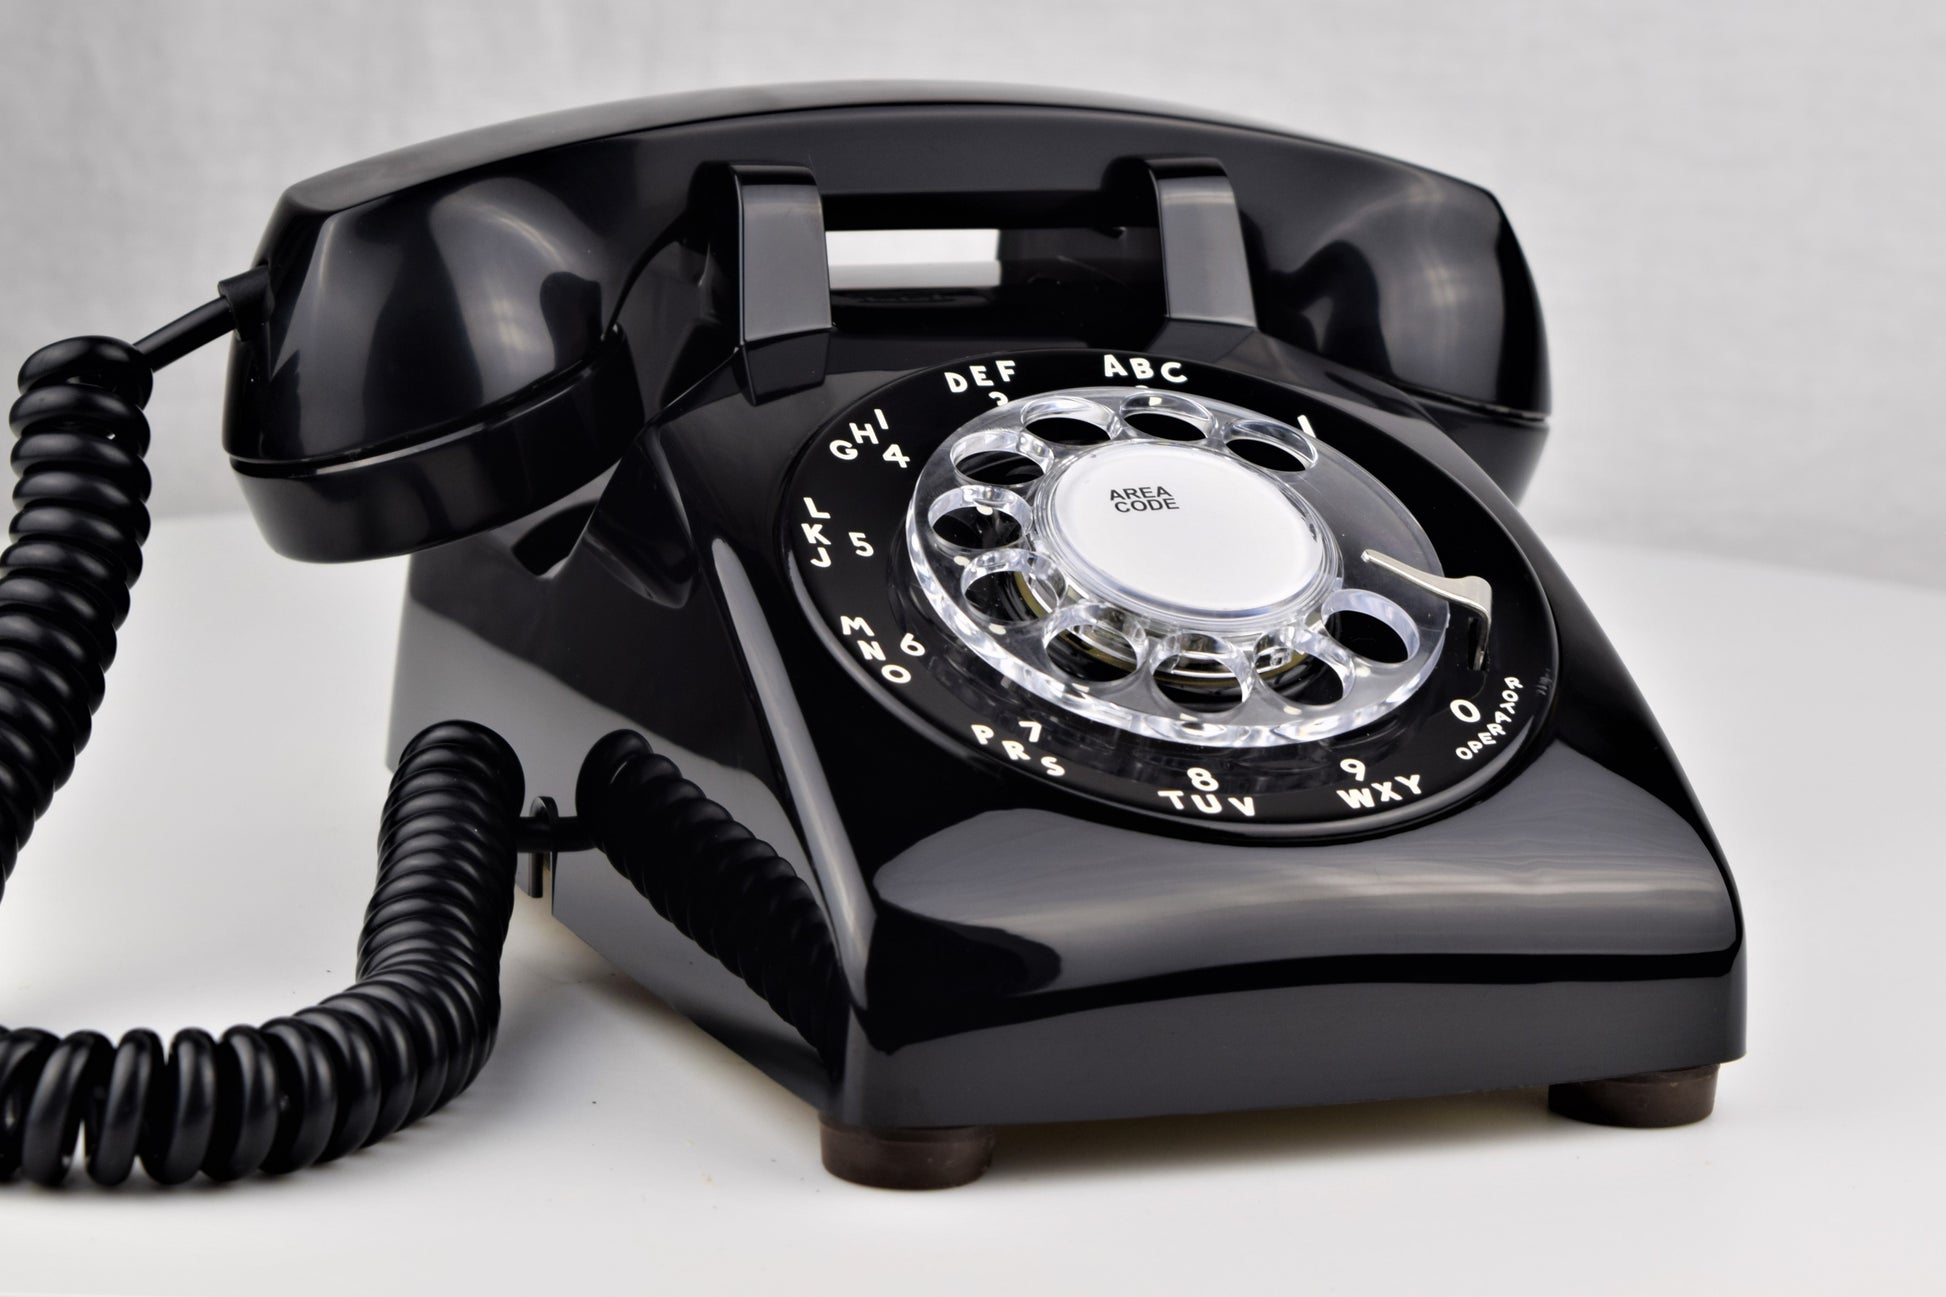 Model 500 telephone - Wikipedia